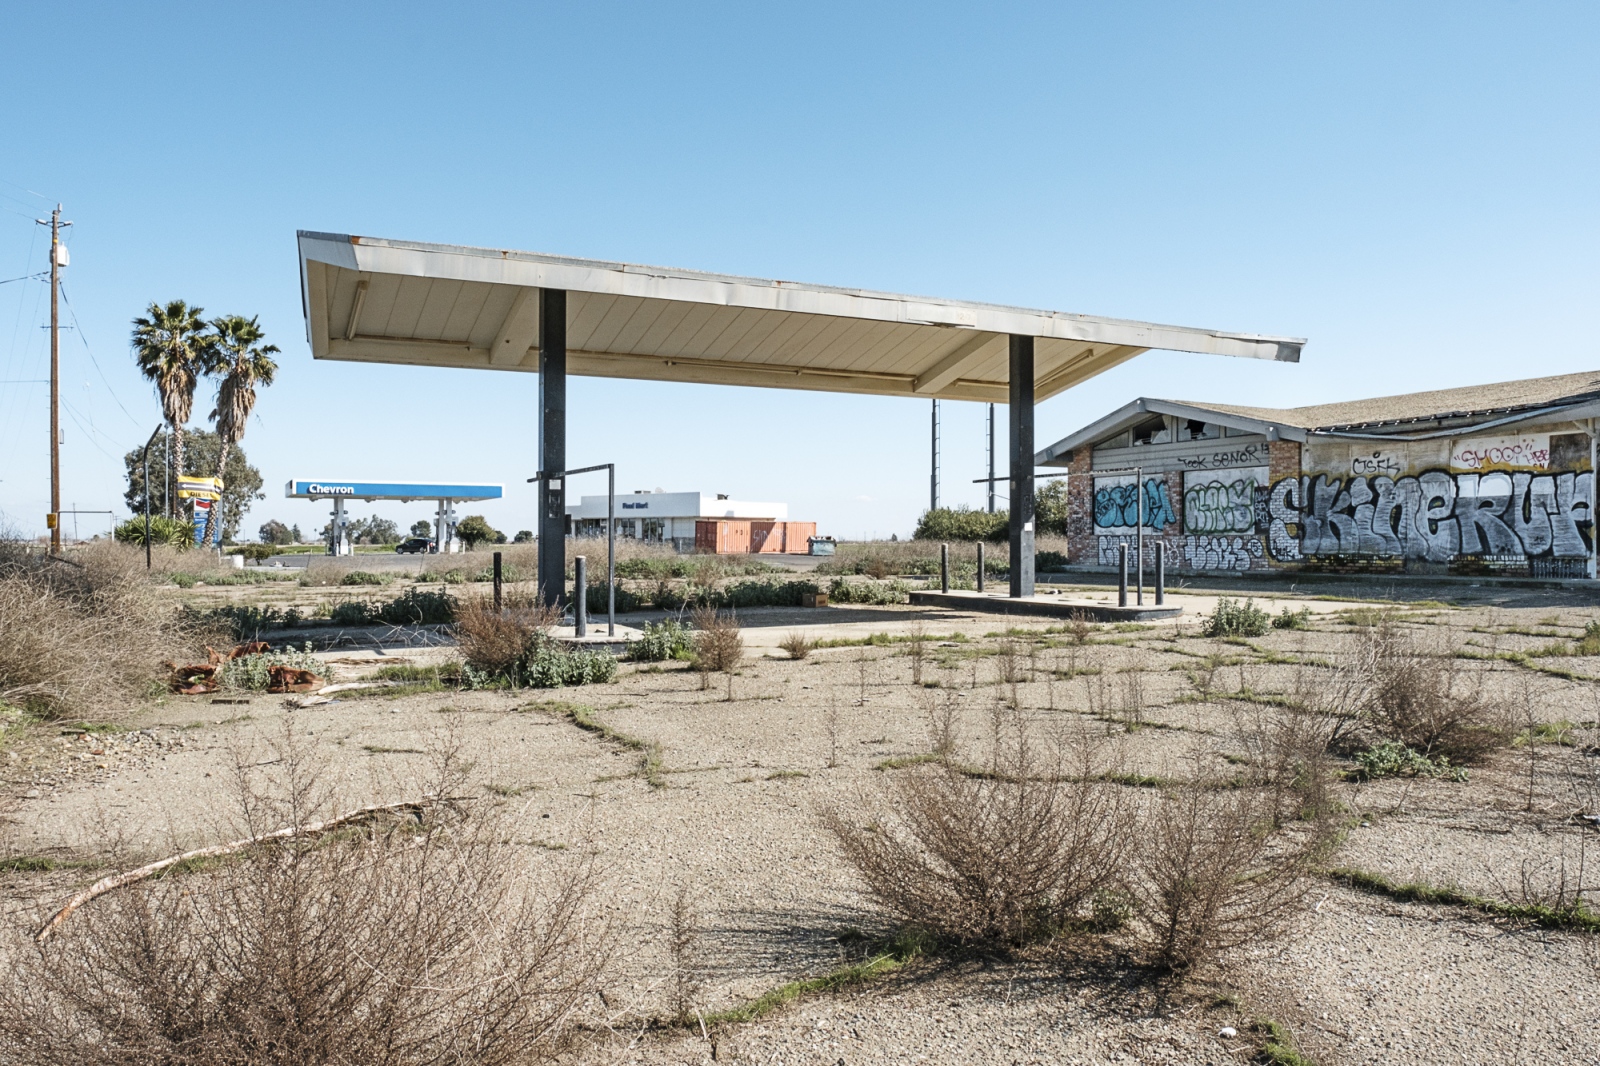 Landscapes - Abandoned Gas Station, Gustine, CA